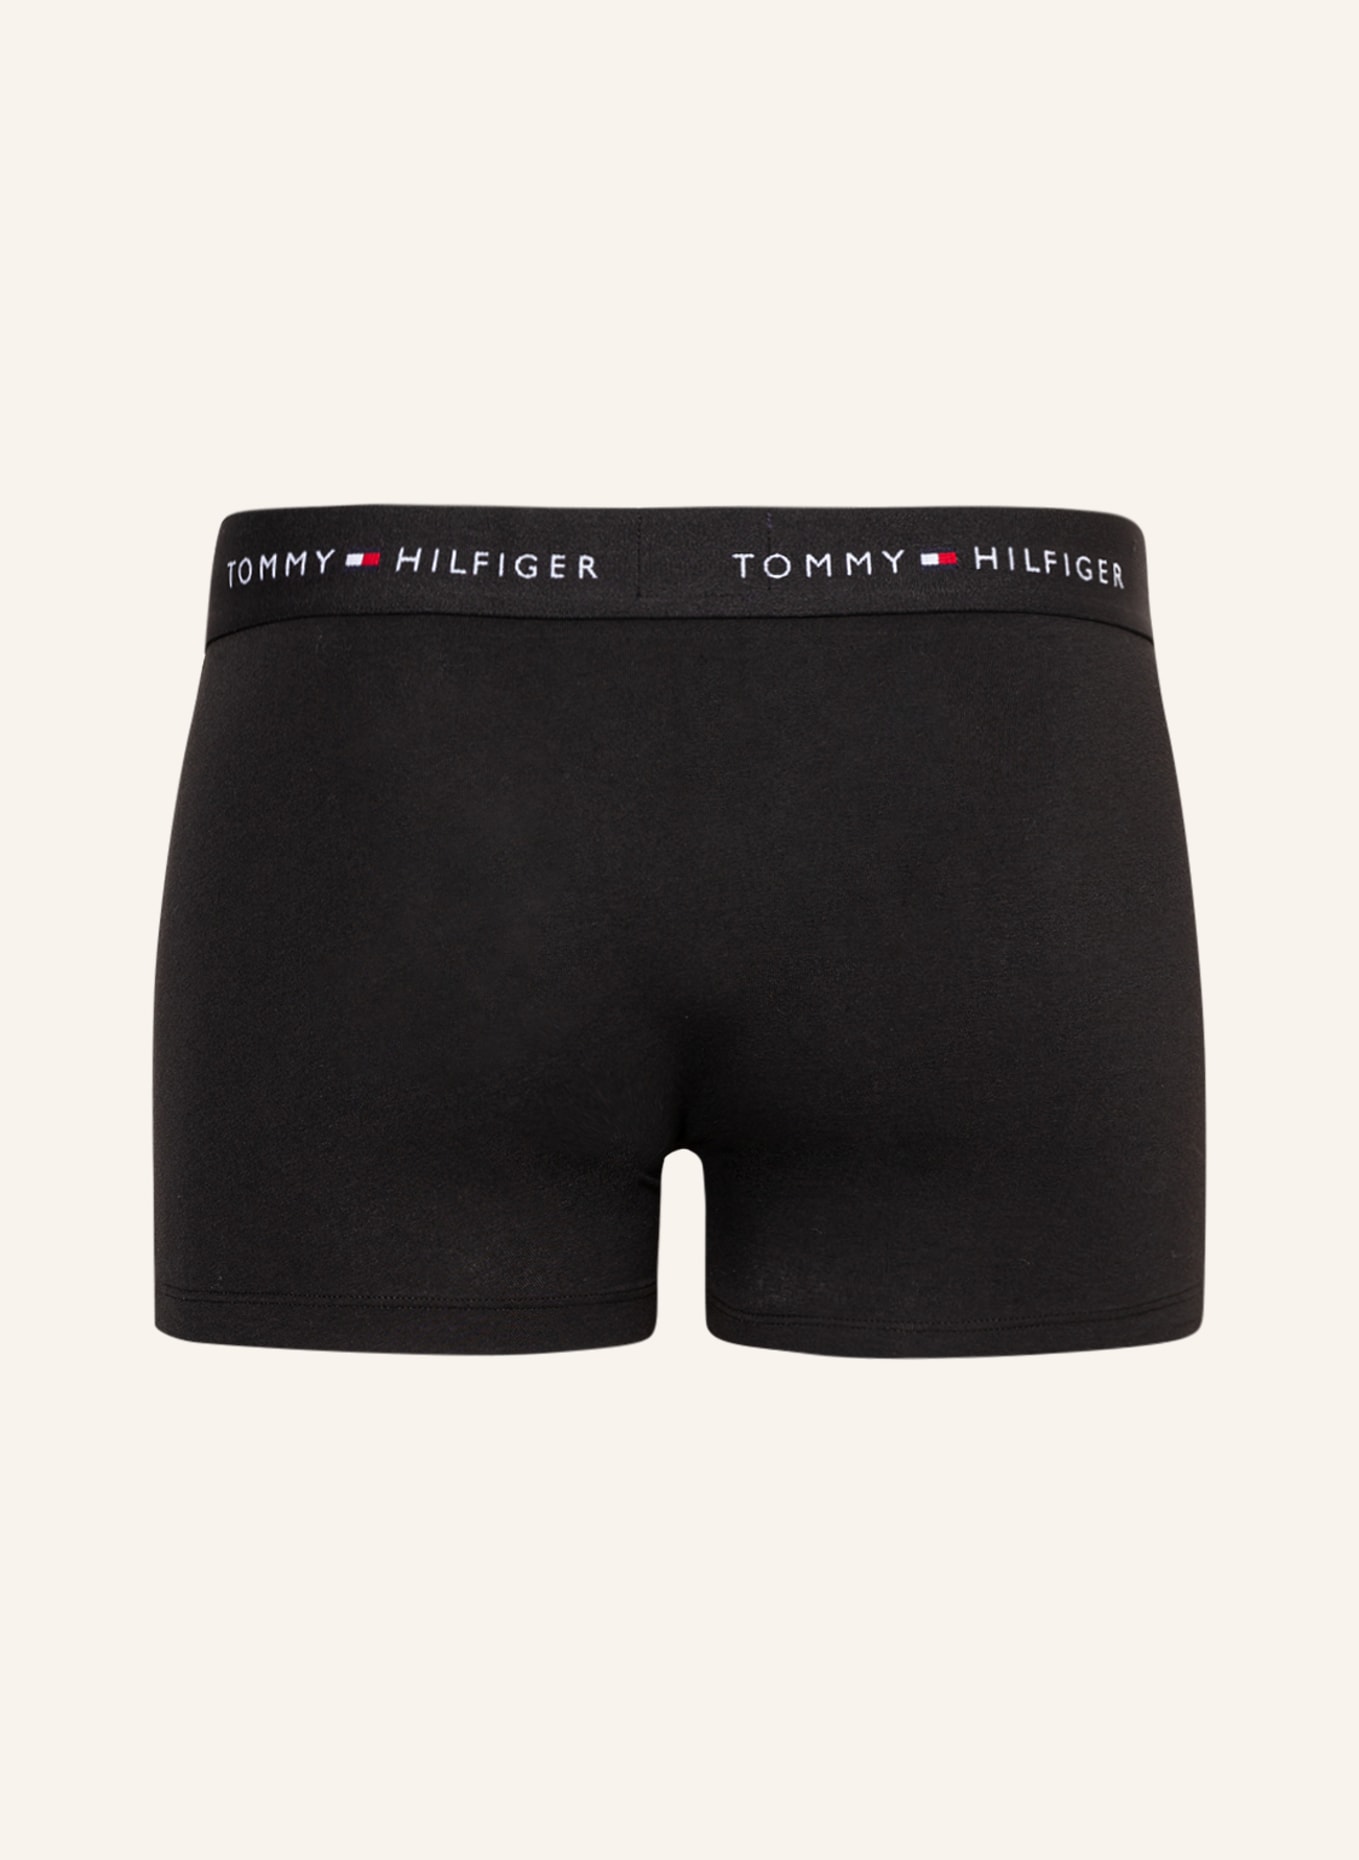 TOMMY HILFIGER 3-pack boxer shorts, Color: BLACK (Image 2)